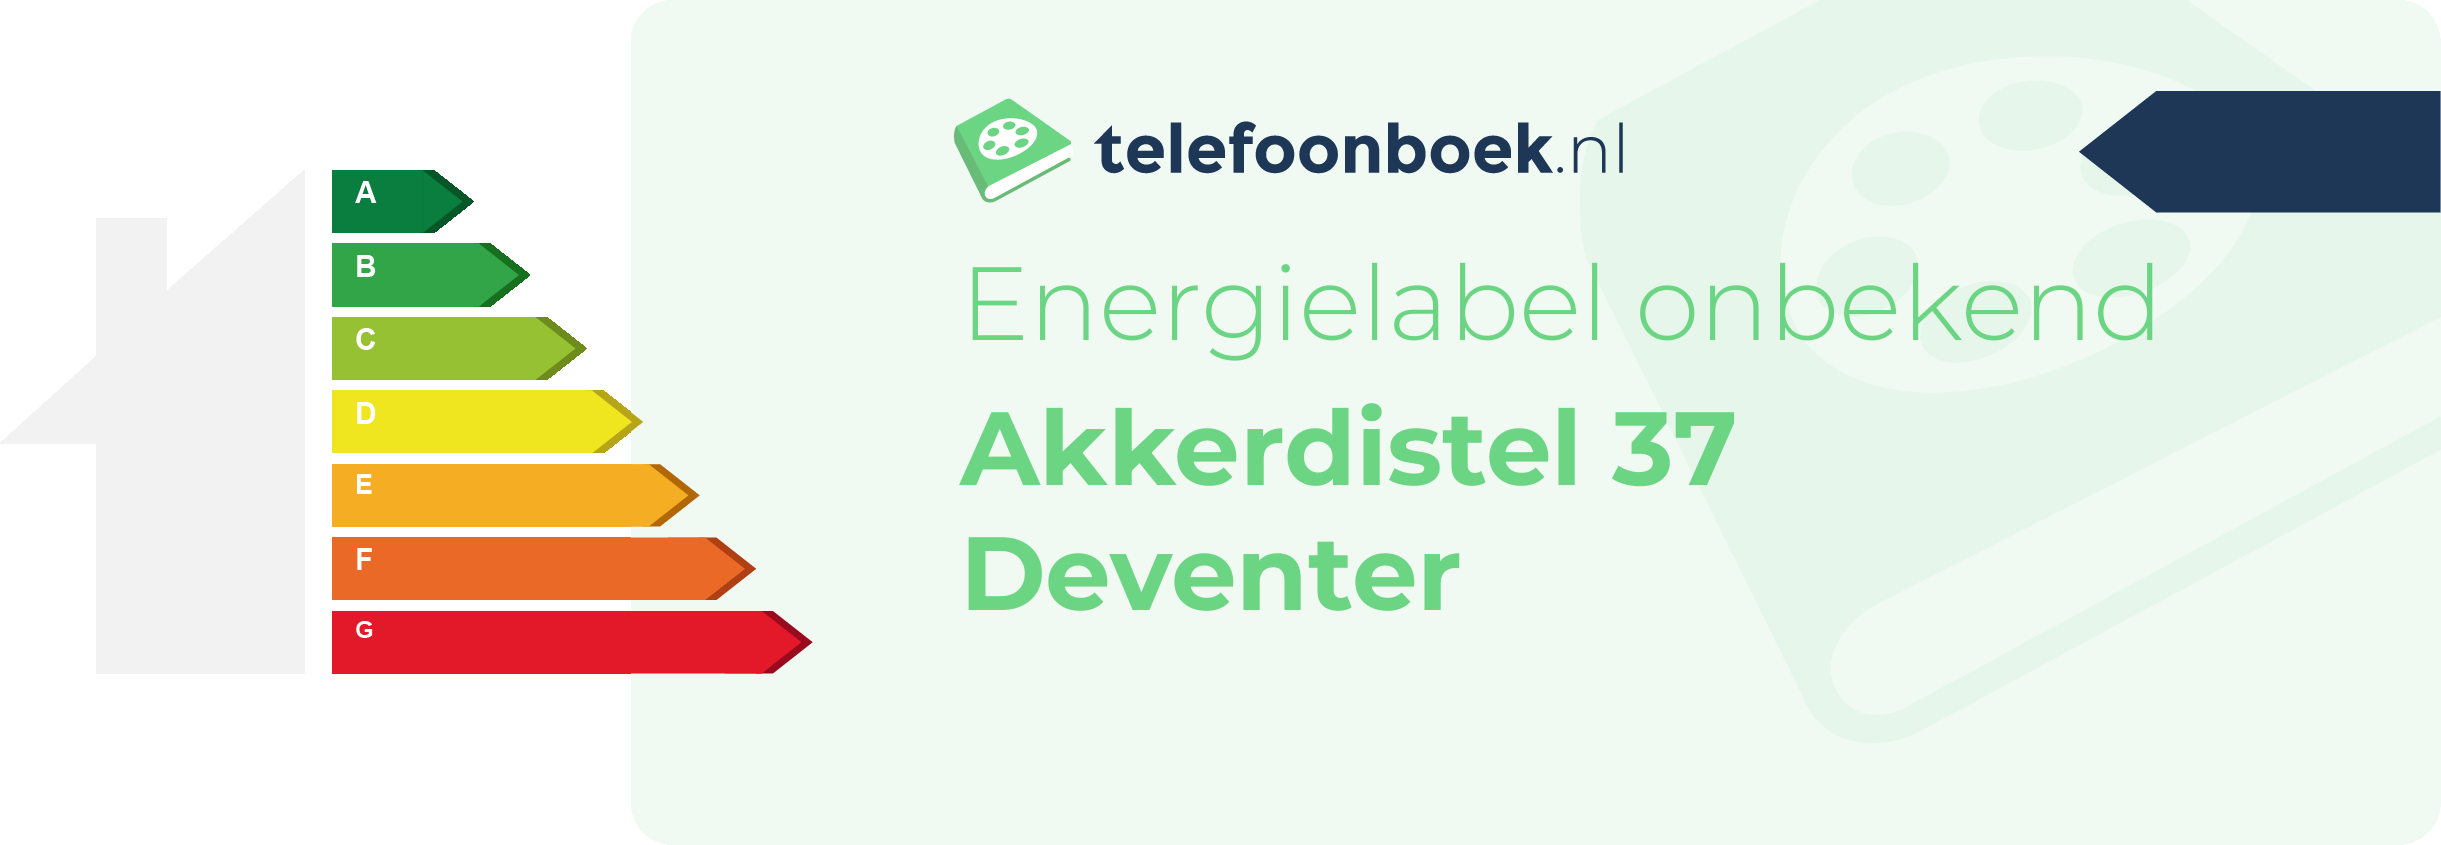 Energielabel Akkerdistel 37 Deventer